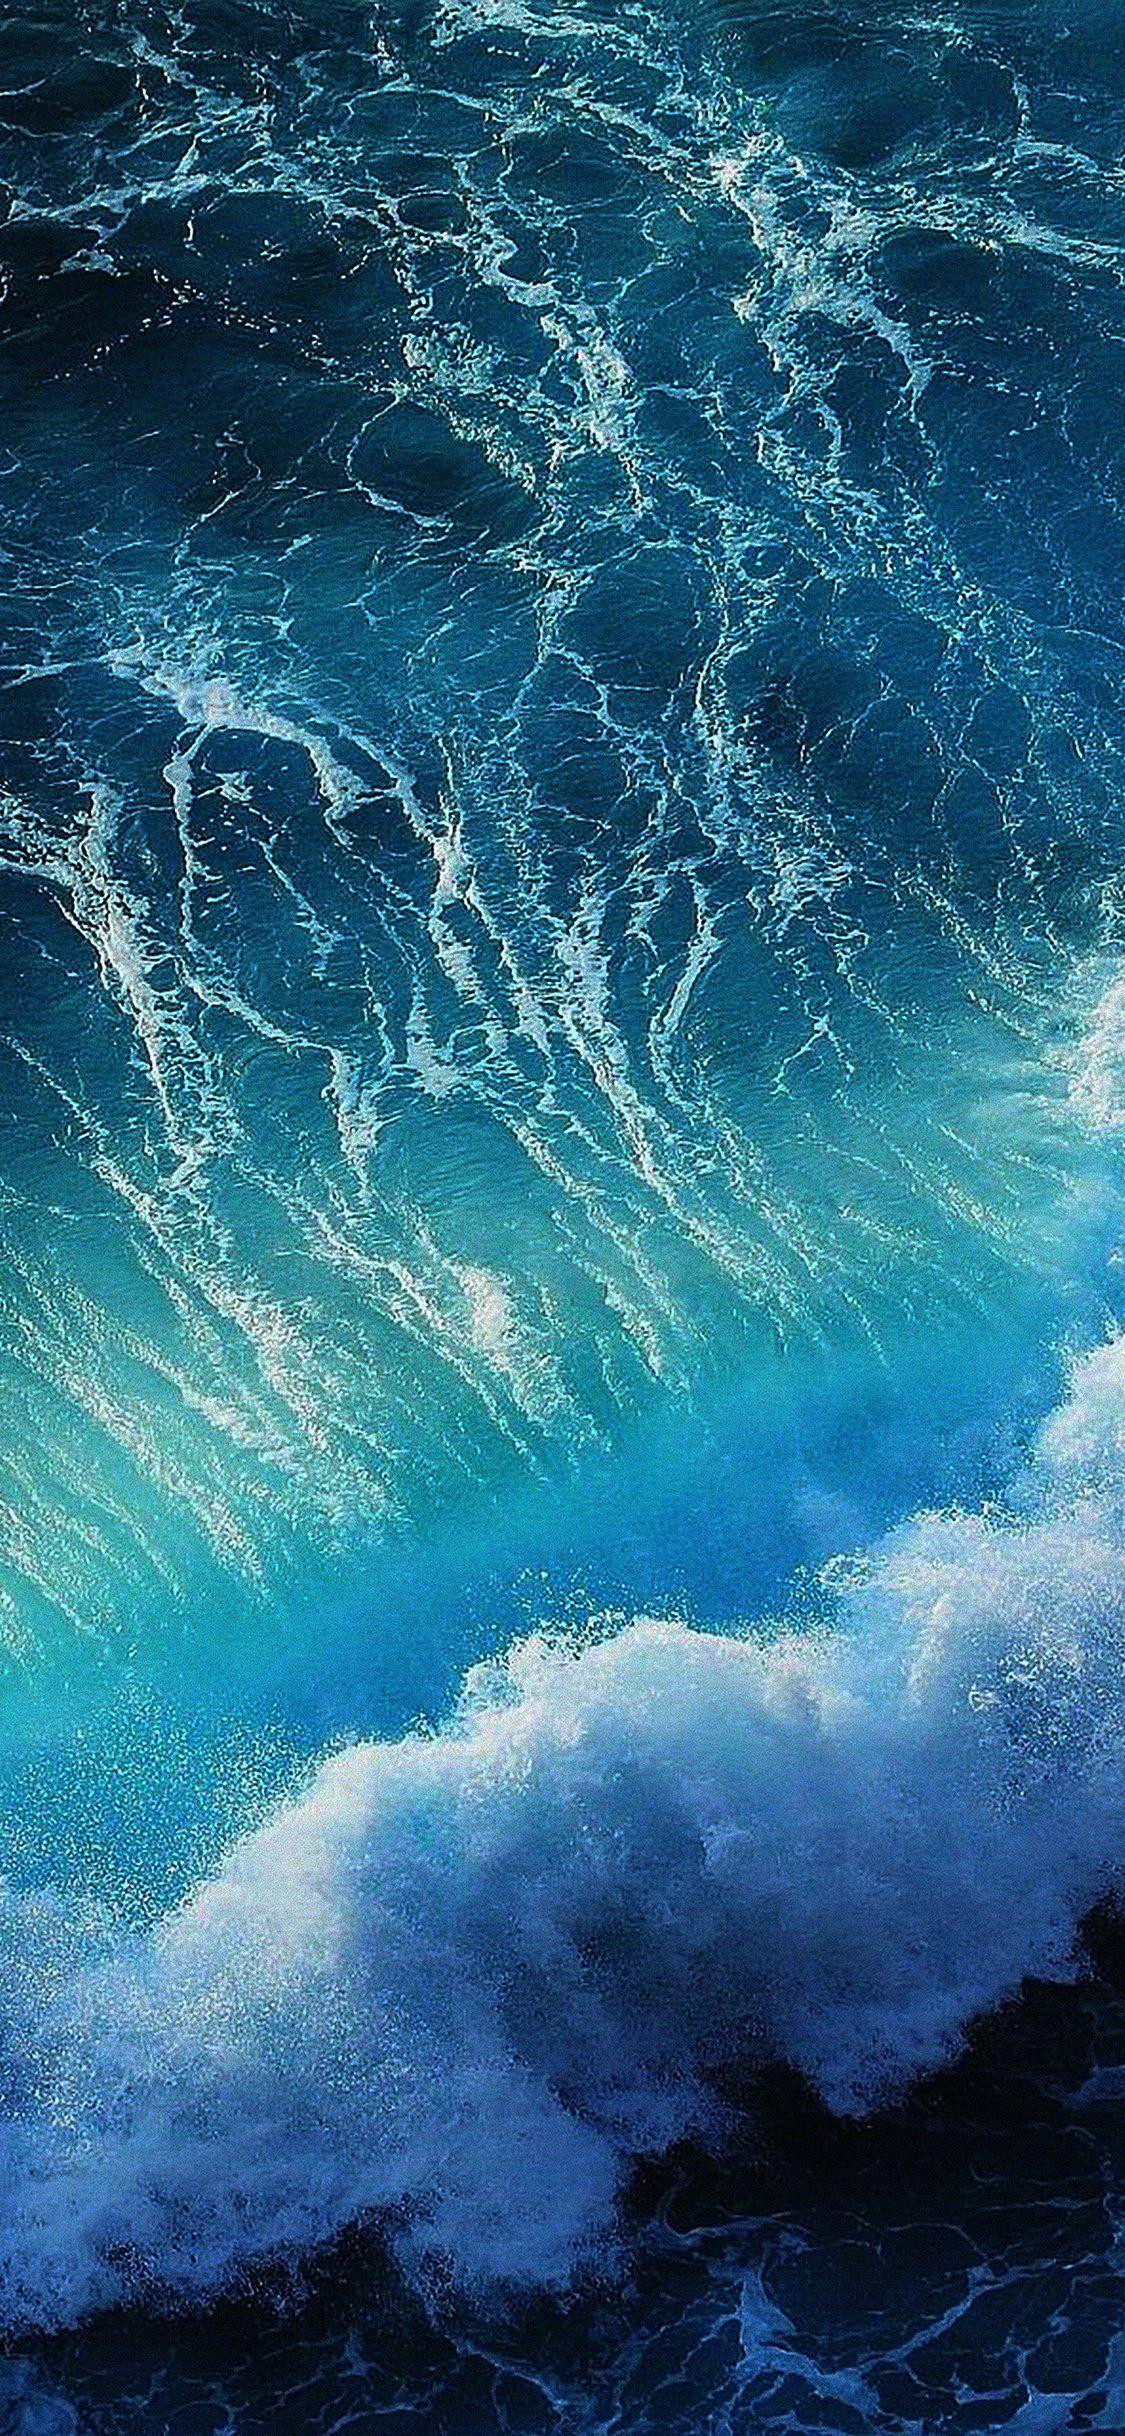 Wave ocean iPhone X wallpaper. iPhone wallpaper in 2019